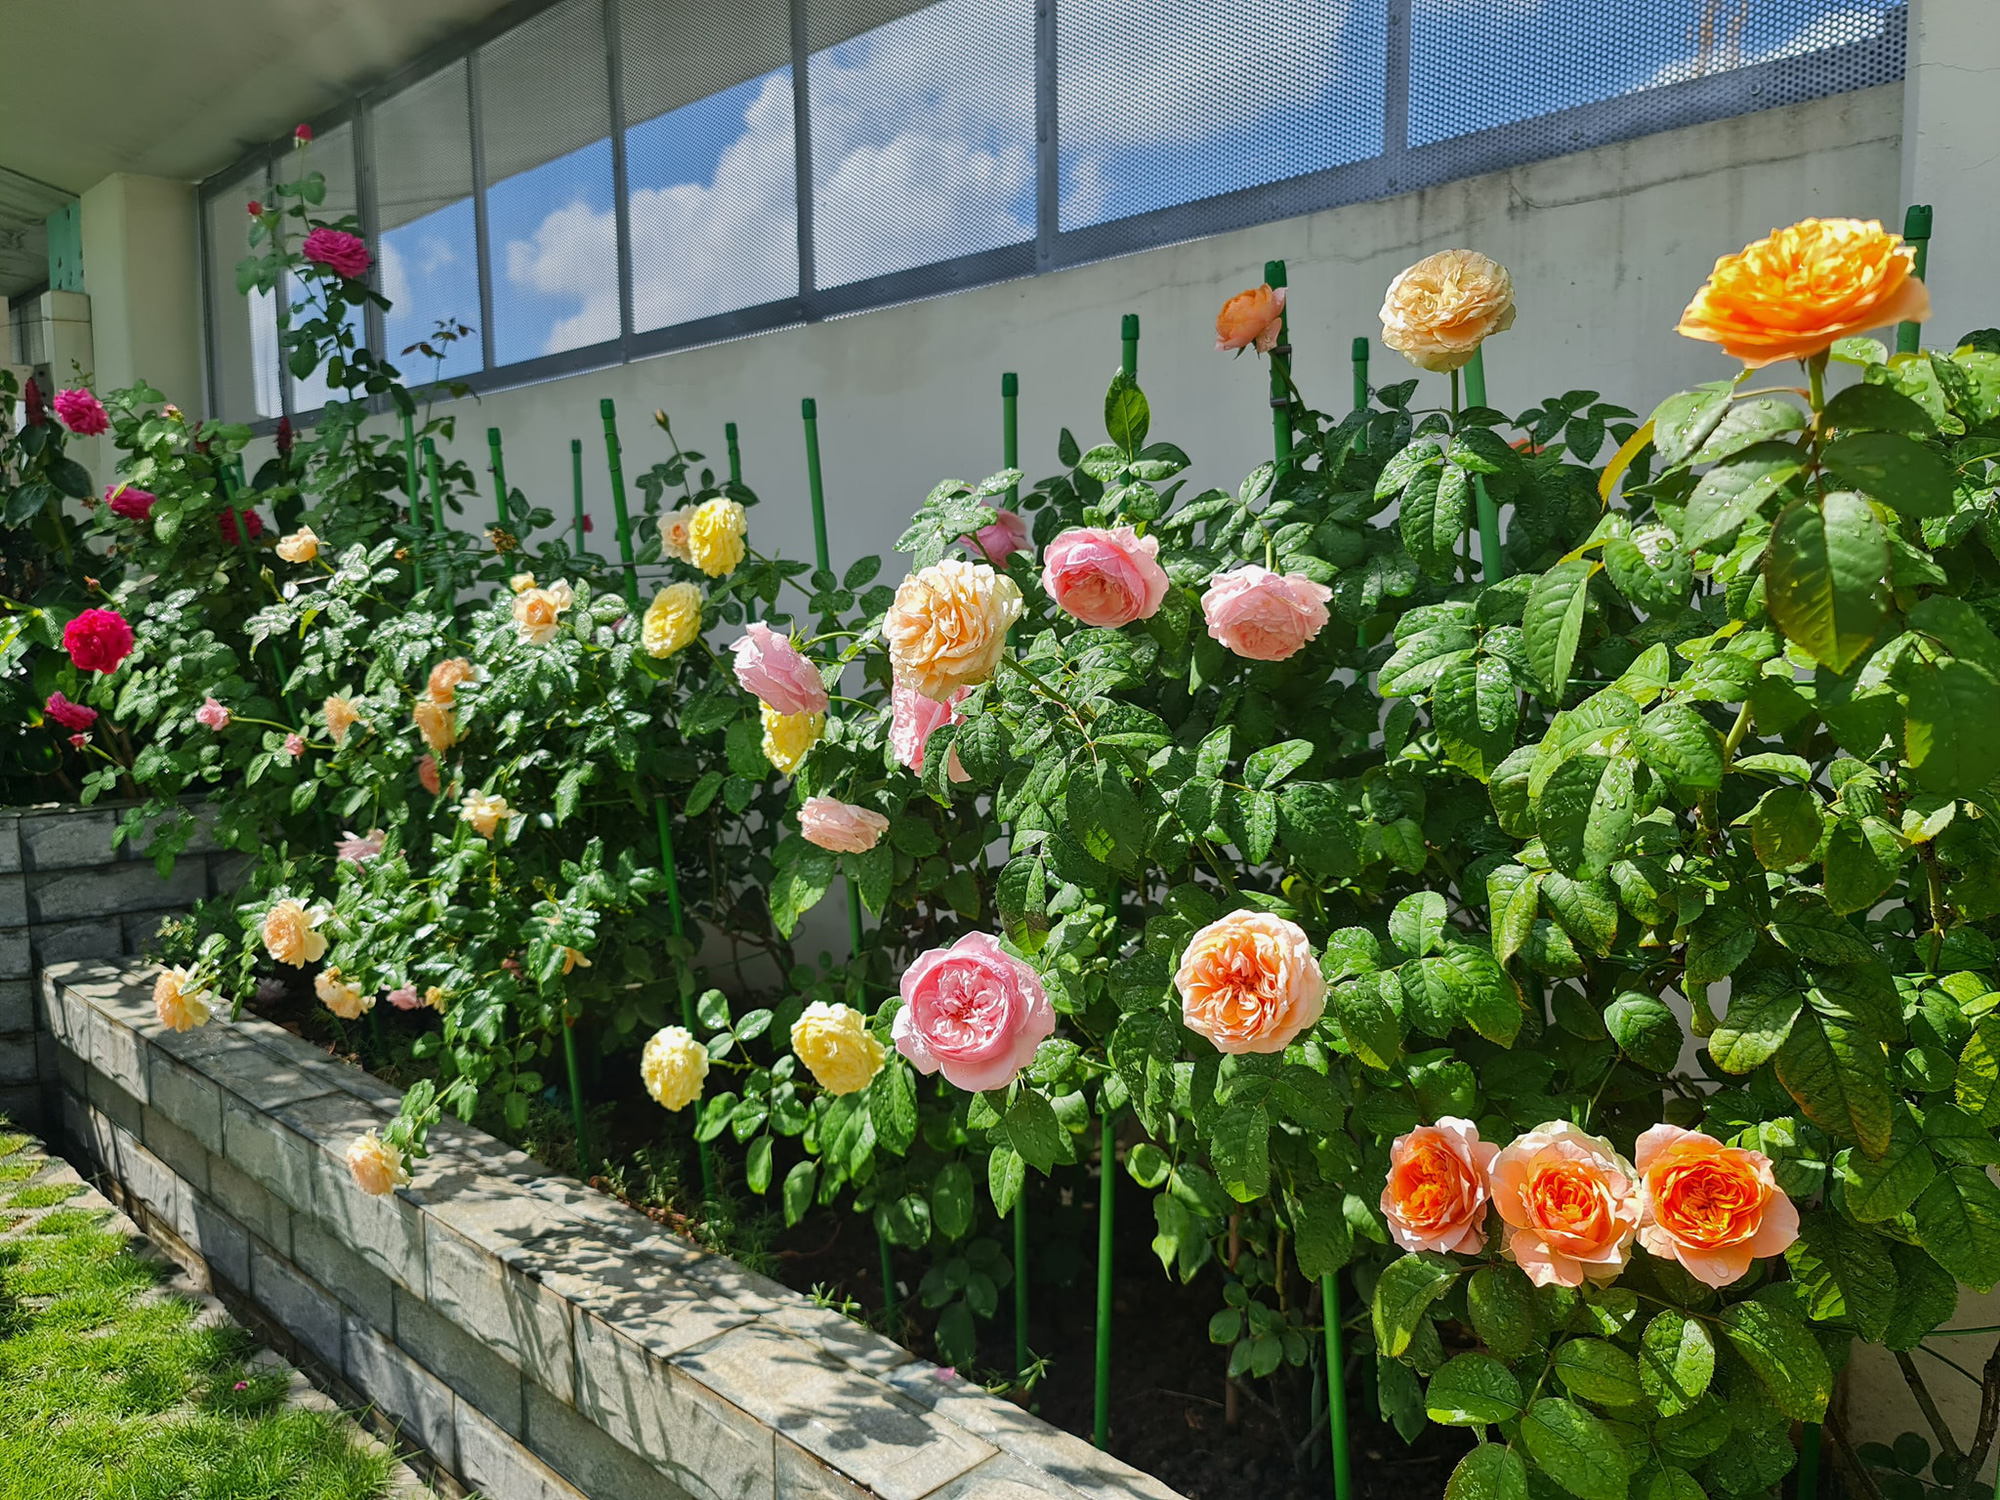 Hoa hồng ngoại với vẻ đẹp hoang dại và bản sắc riêng biệt sẽ giúp bạn có được những hình ảnh tuyệt vời vào bất kỳ mùa nào trong năm. Nhưng để đạt được hiệu quả tối đa, chỉ cần đến với chúng tôi, chúng tôi cam kết cung cấp cho bạn những loại hoa hồng ngoại tốt nhất và được trồng và chăm sóc một cách chu đáo.